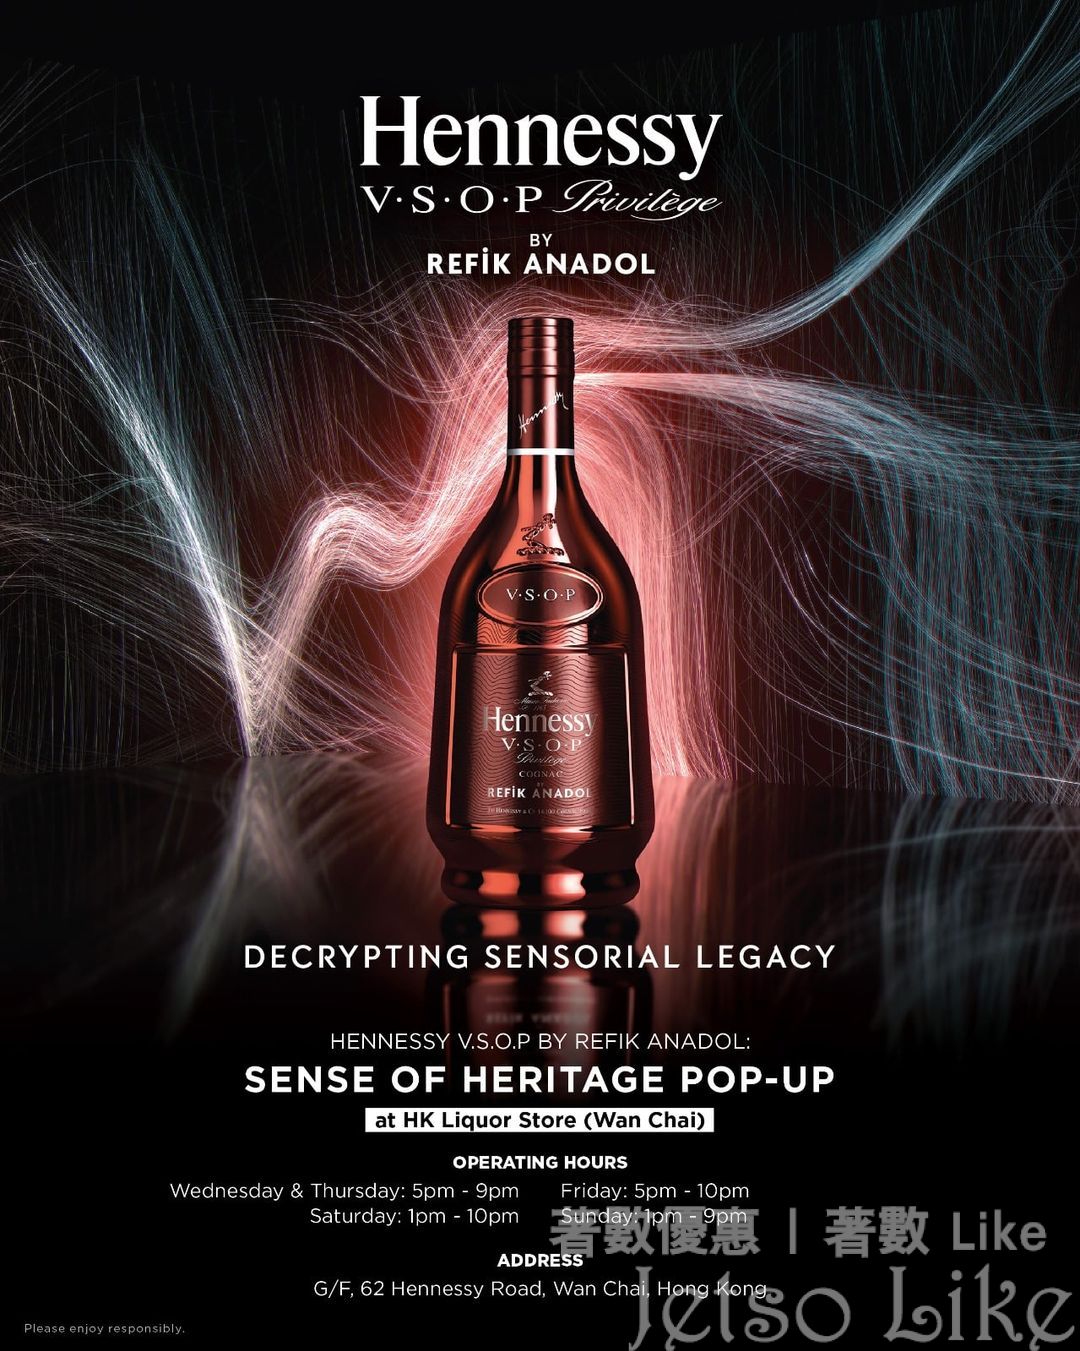 軒尼詩 V.S.O.P Sense of Heritage 限定創新品酒 與 數碼體驗